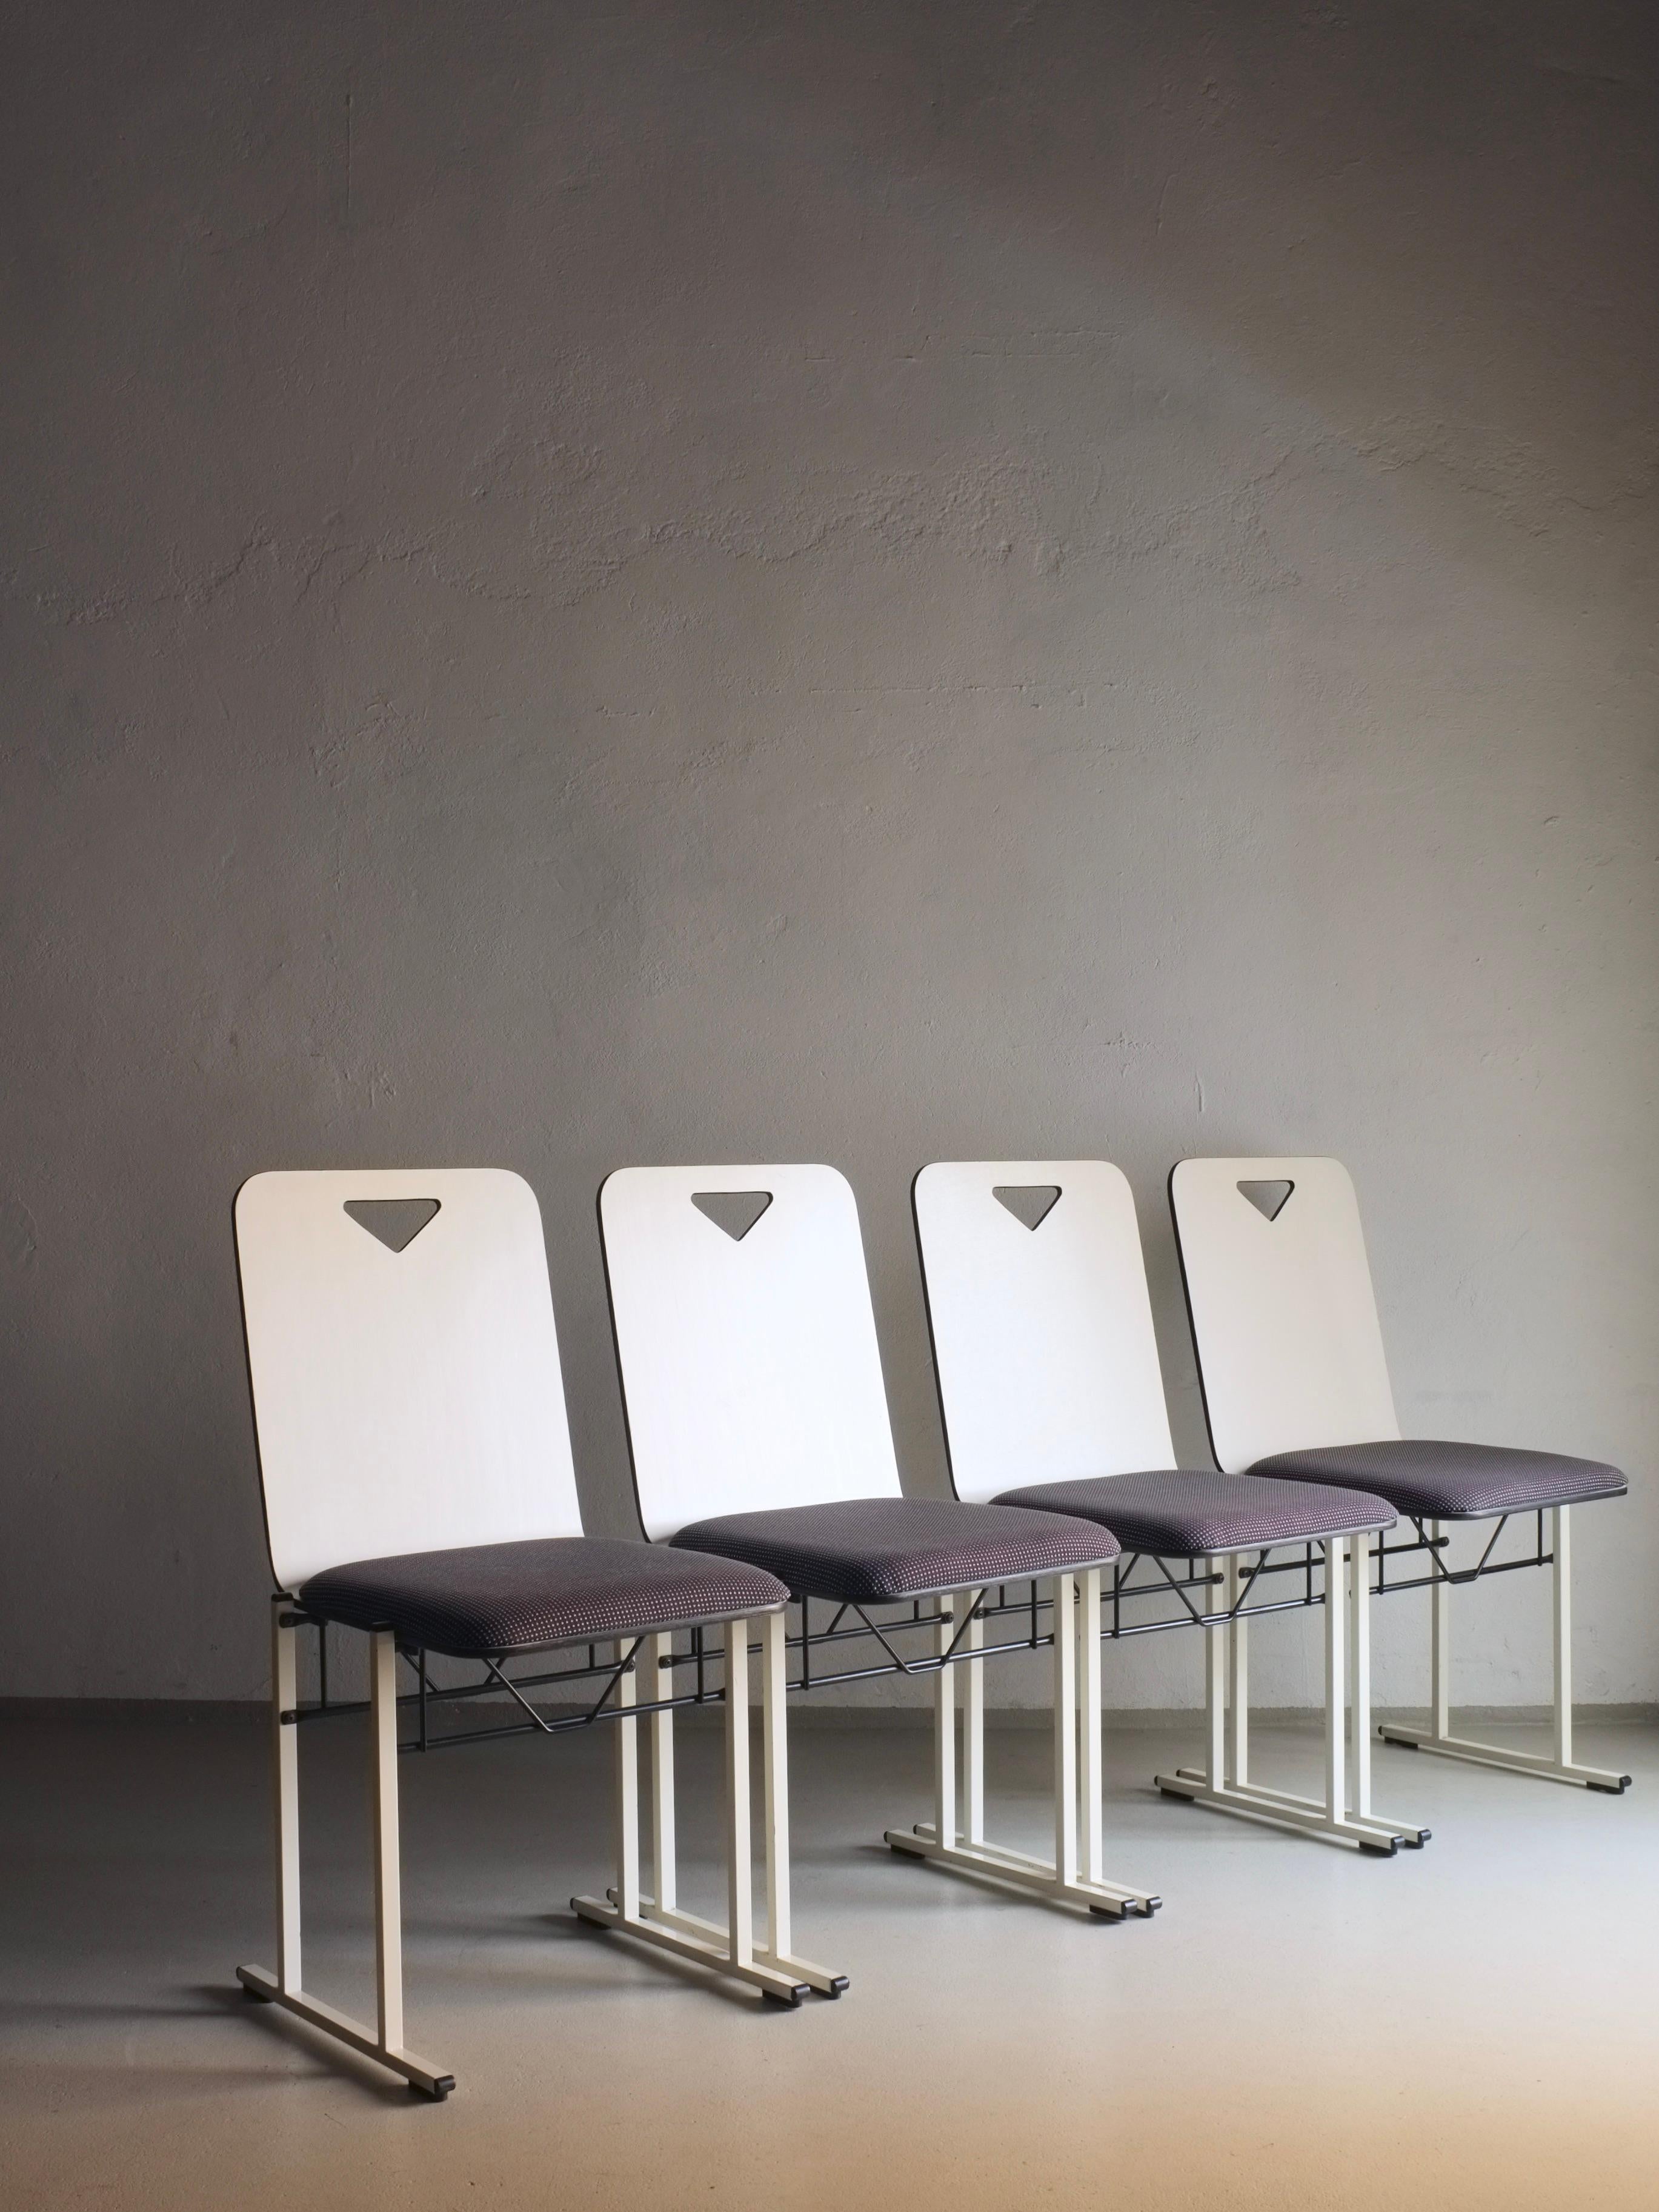 Satz von 4 Stühlen, entworfen von Yrjö Kukkapuro für Avarte, Modell A500. Weißes Birkensperrholz, weiß emaillierter Stahlrahmen, Original-Stoffpolsterung. Ich habe einen 2er-Satz mit einigen Mängeln.

Zusätzliche Informationen:
Land der Herstellung: